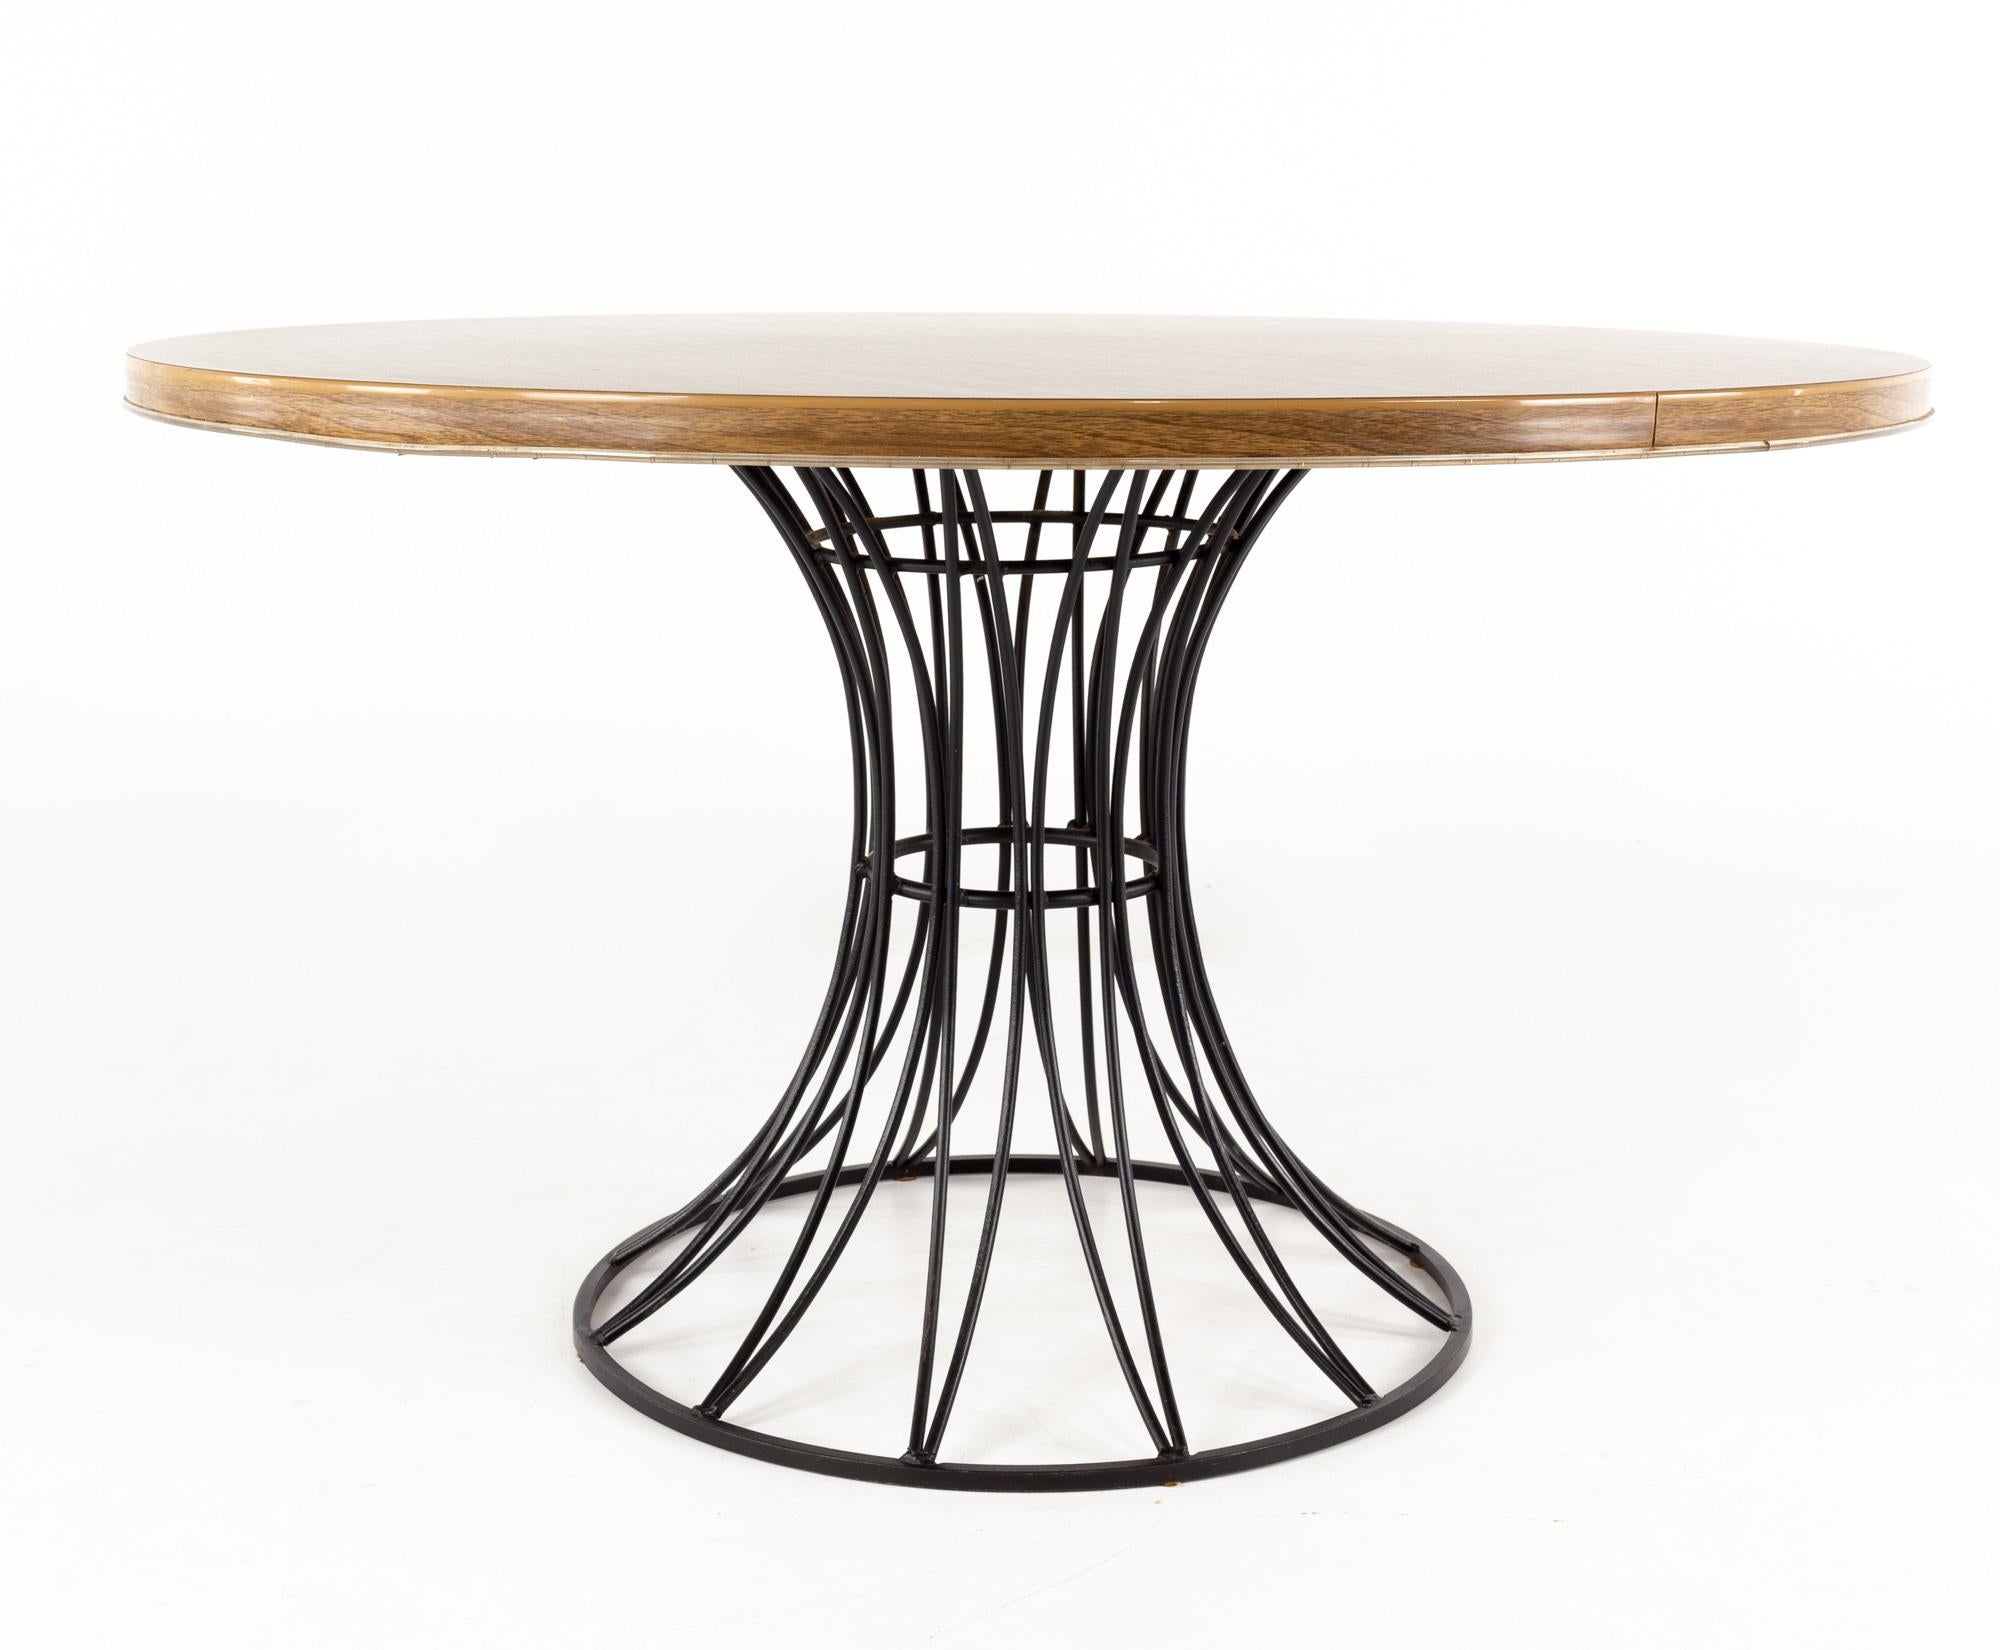 Richard McCarthy for Selrite Style Formica & iron mid century dining table

La table mesure : 48 largeur x 48 profondeur x 28 hauteur

Tous les meubles peuvent être obtenus dans ce que nous appelons un état vintage restauré. Cela signifie que la